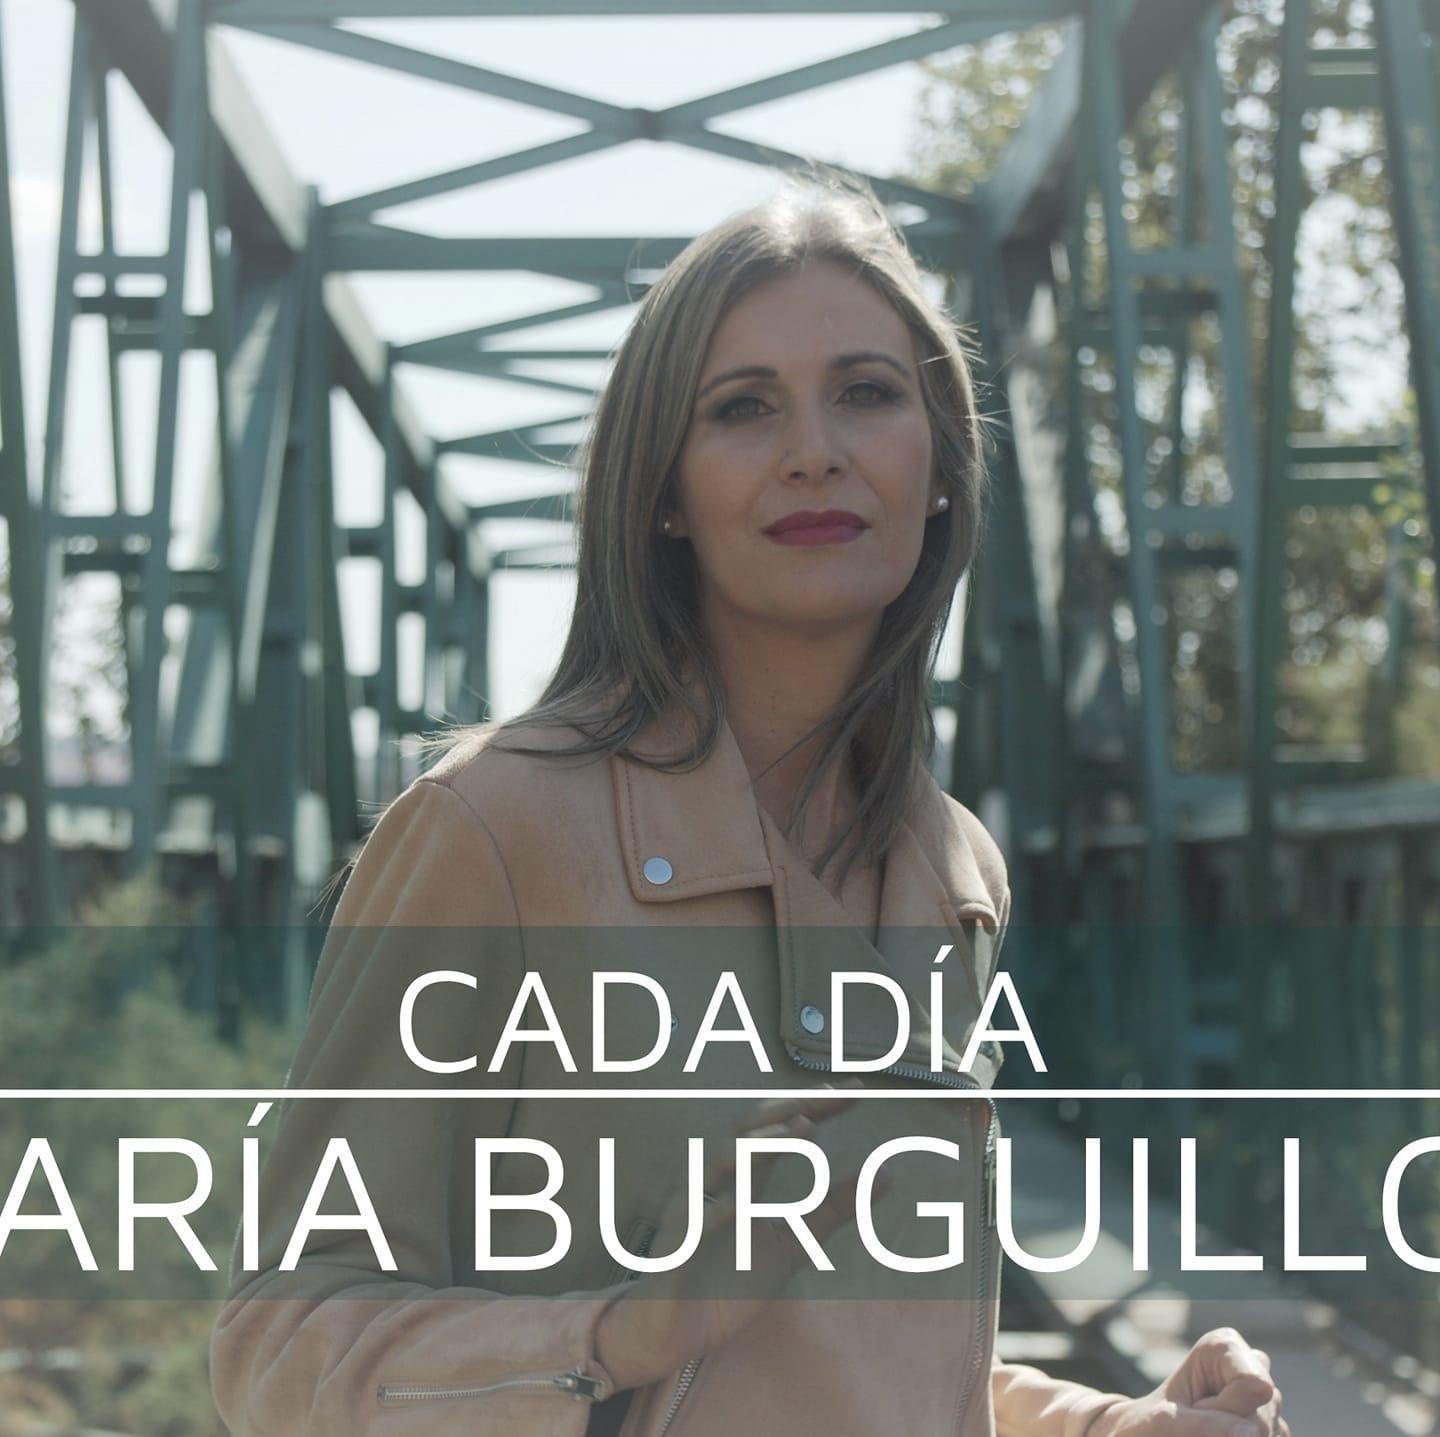 noticias musicales: MARÍA BURGUILLOS presenta “CADA DÍA”